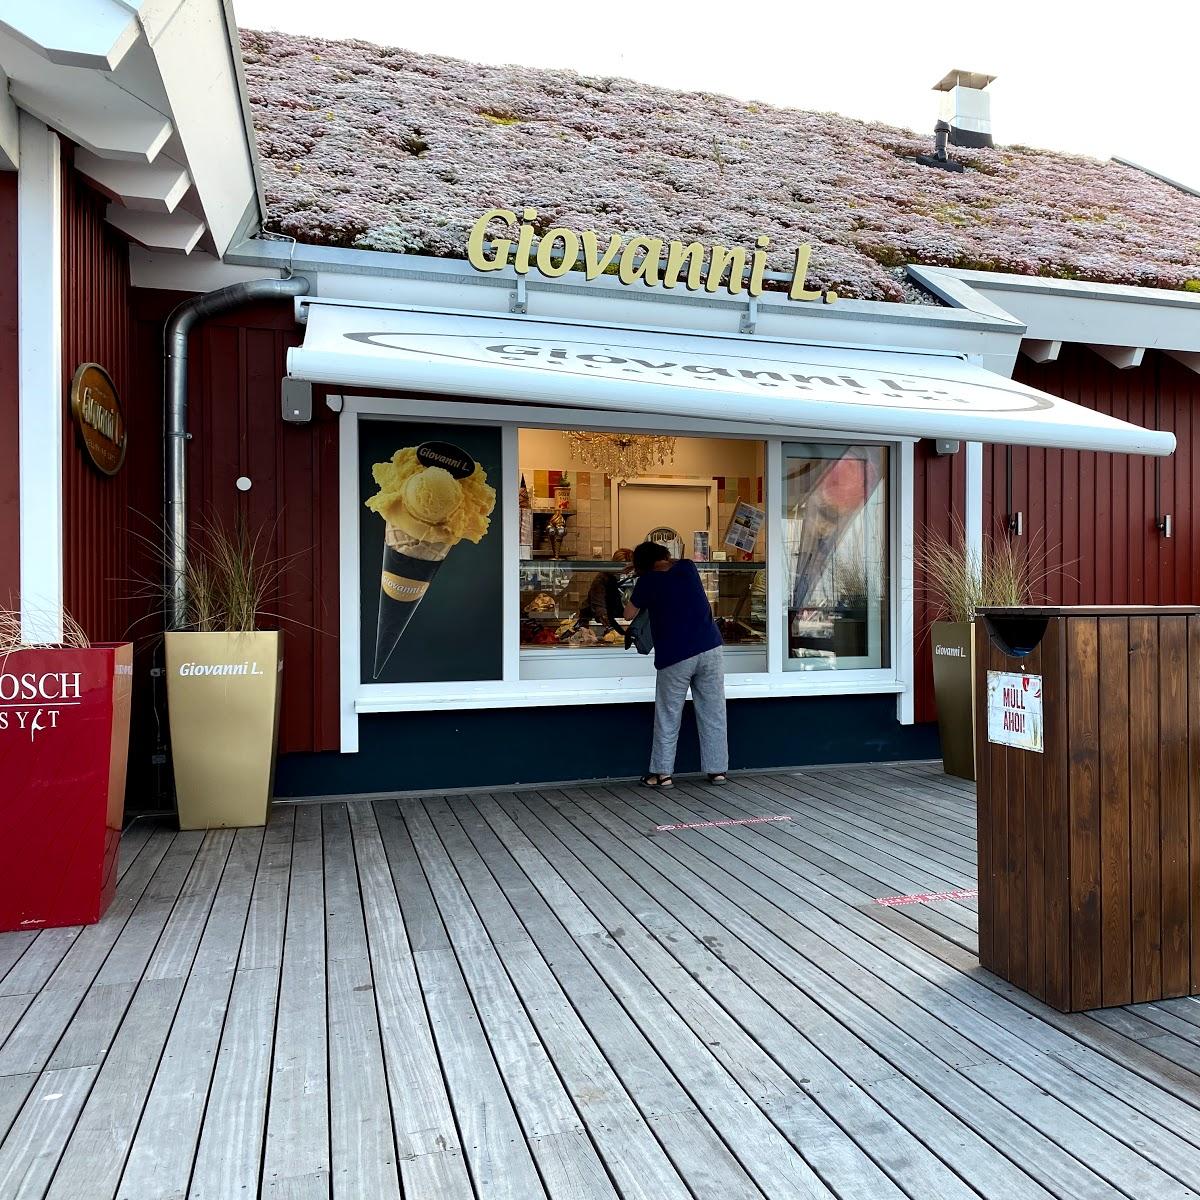 Restaurant "Giovanni L." in Heiligenhafen